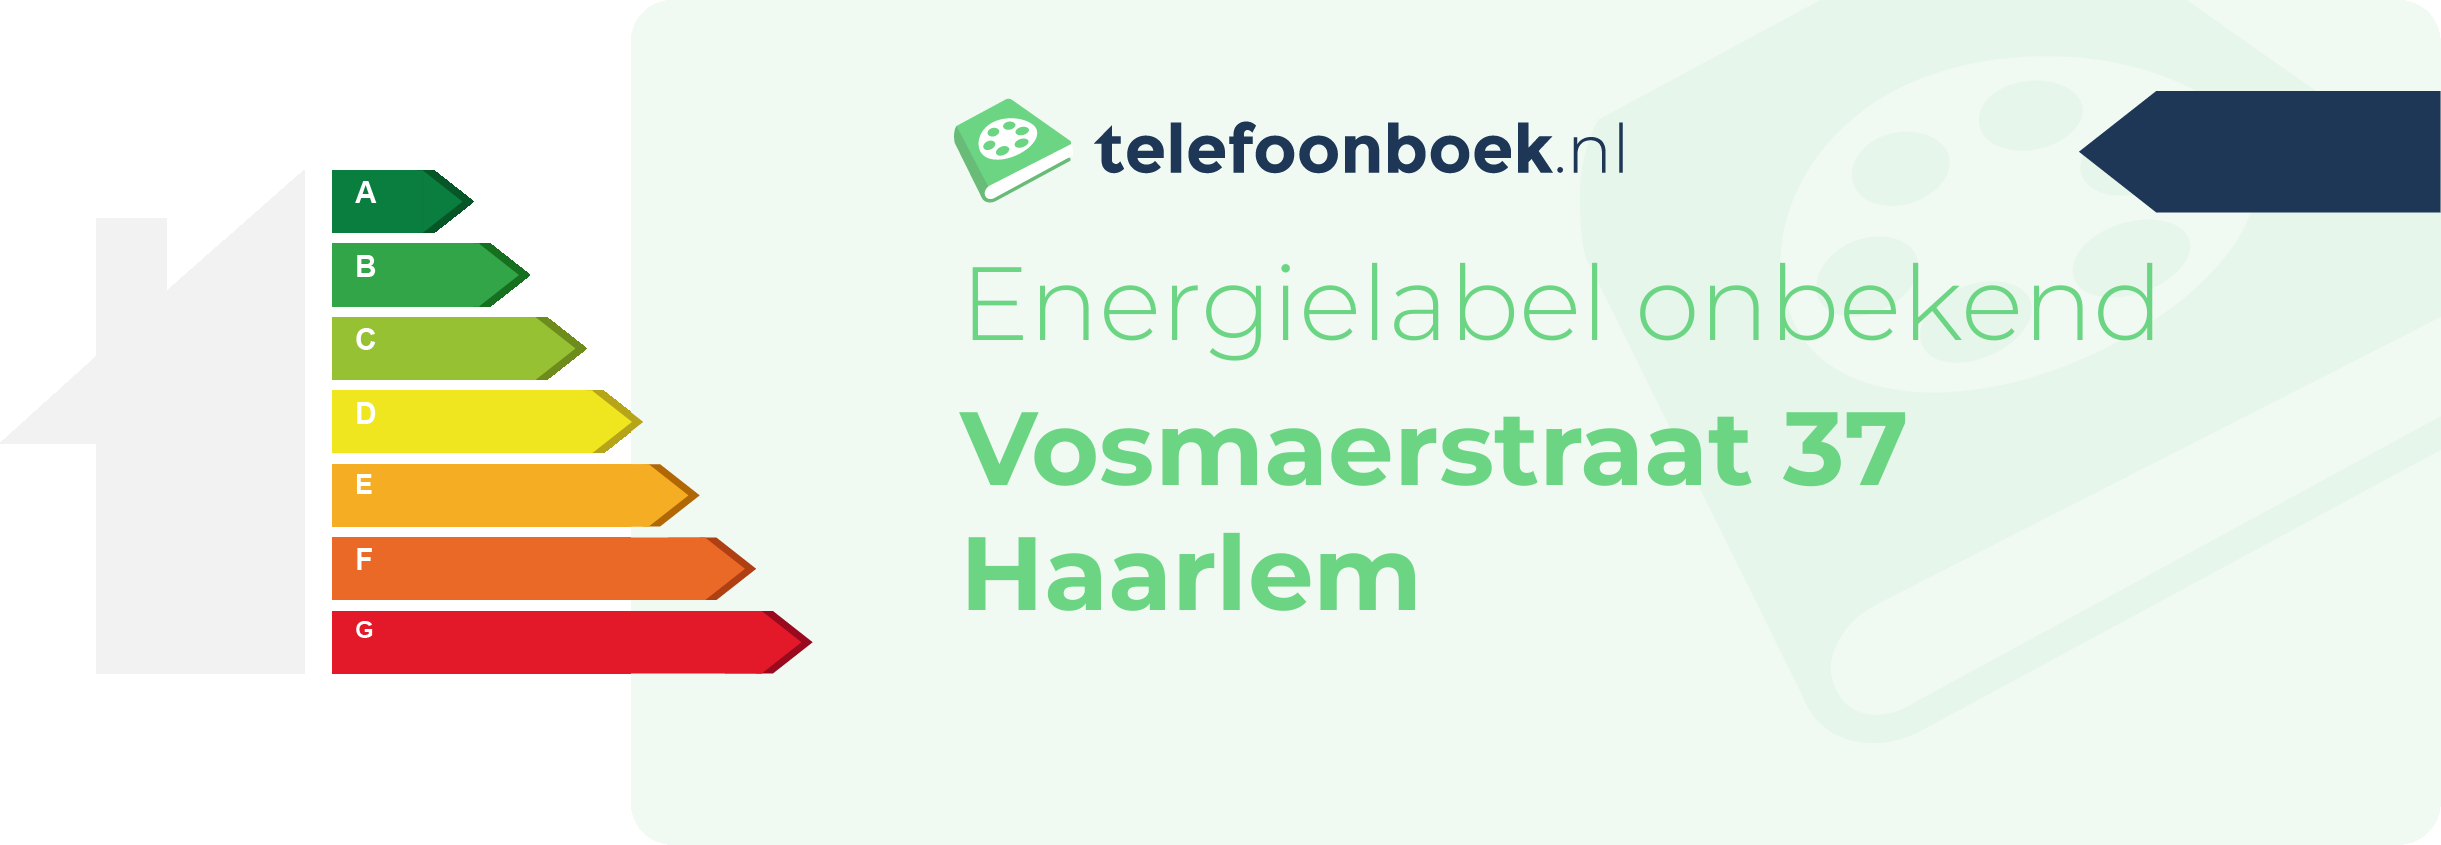 Energielabel Vosmaerstraat 37 Haarlem